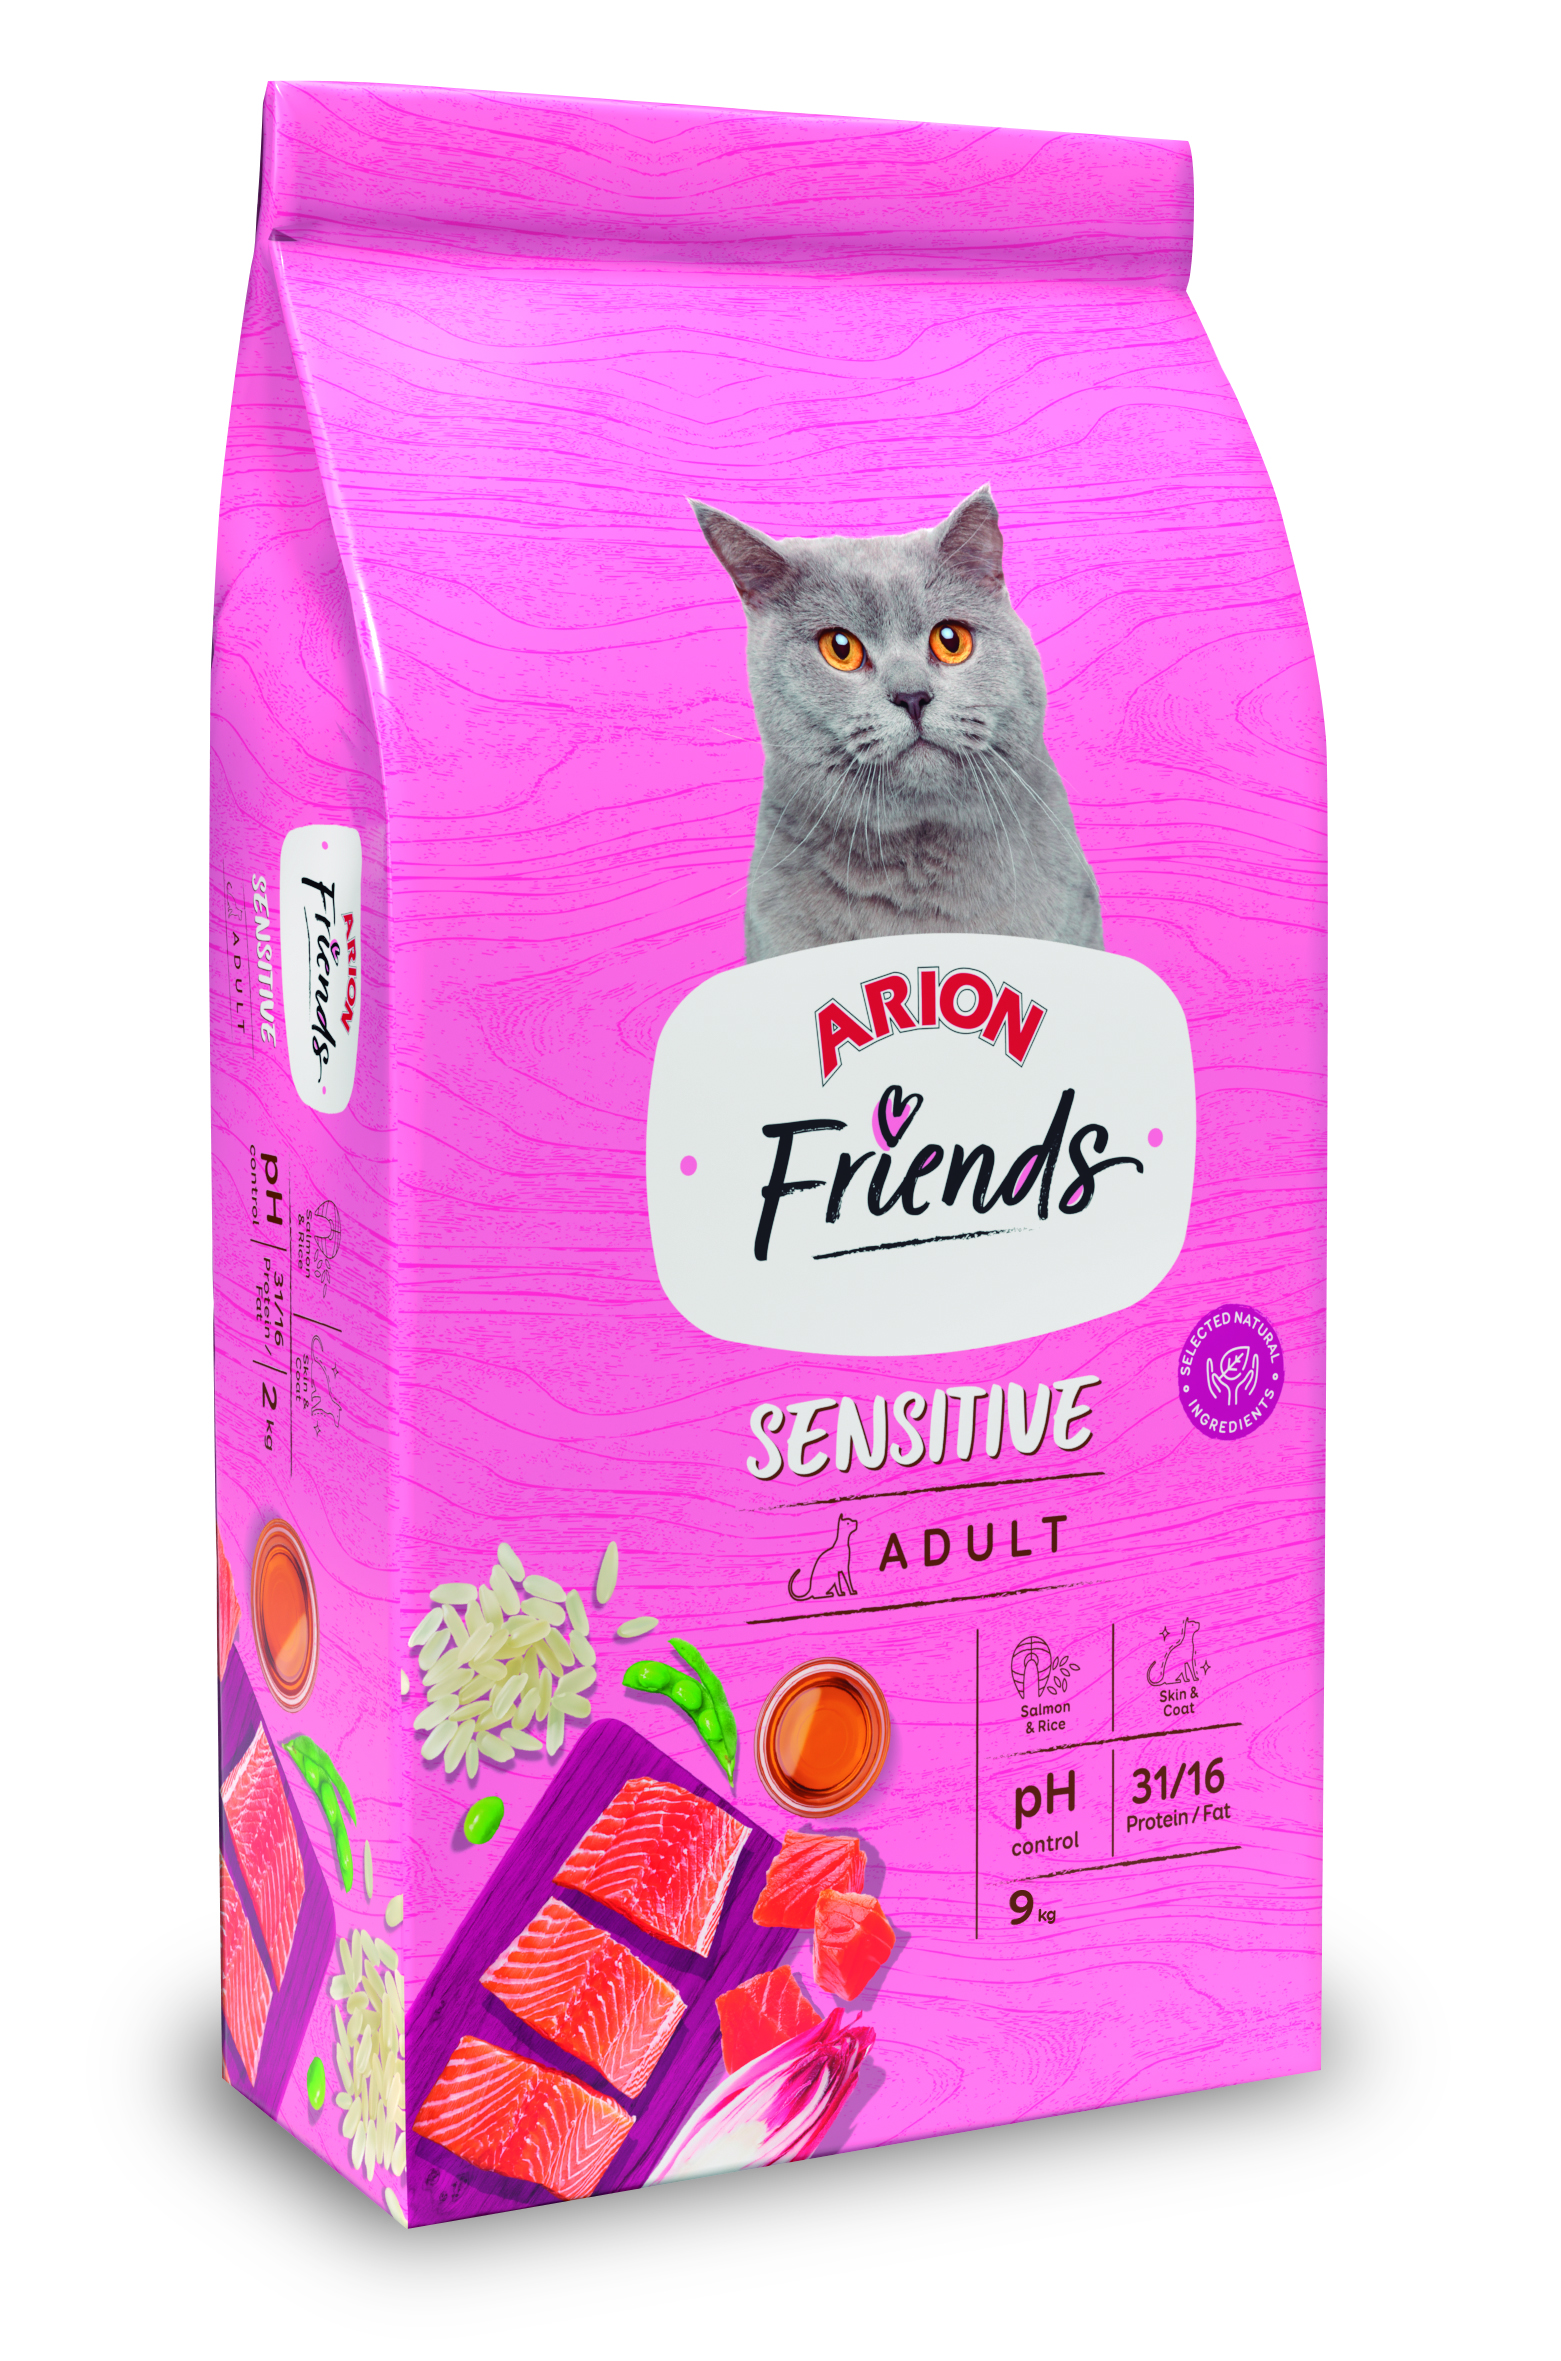 Arion Friends Adult “Sensitive Cat” – 9Kg